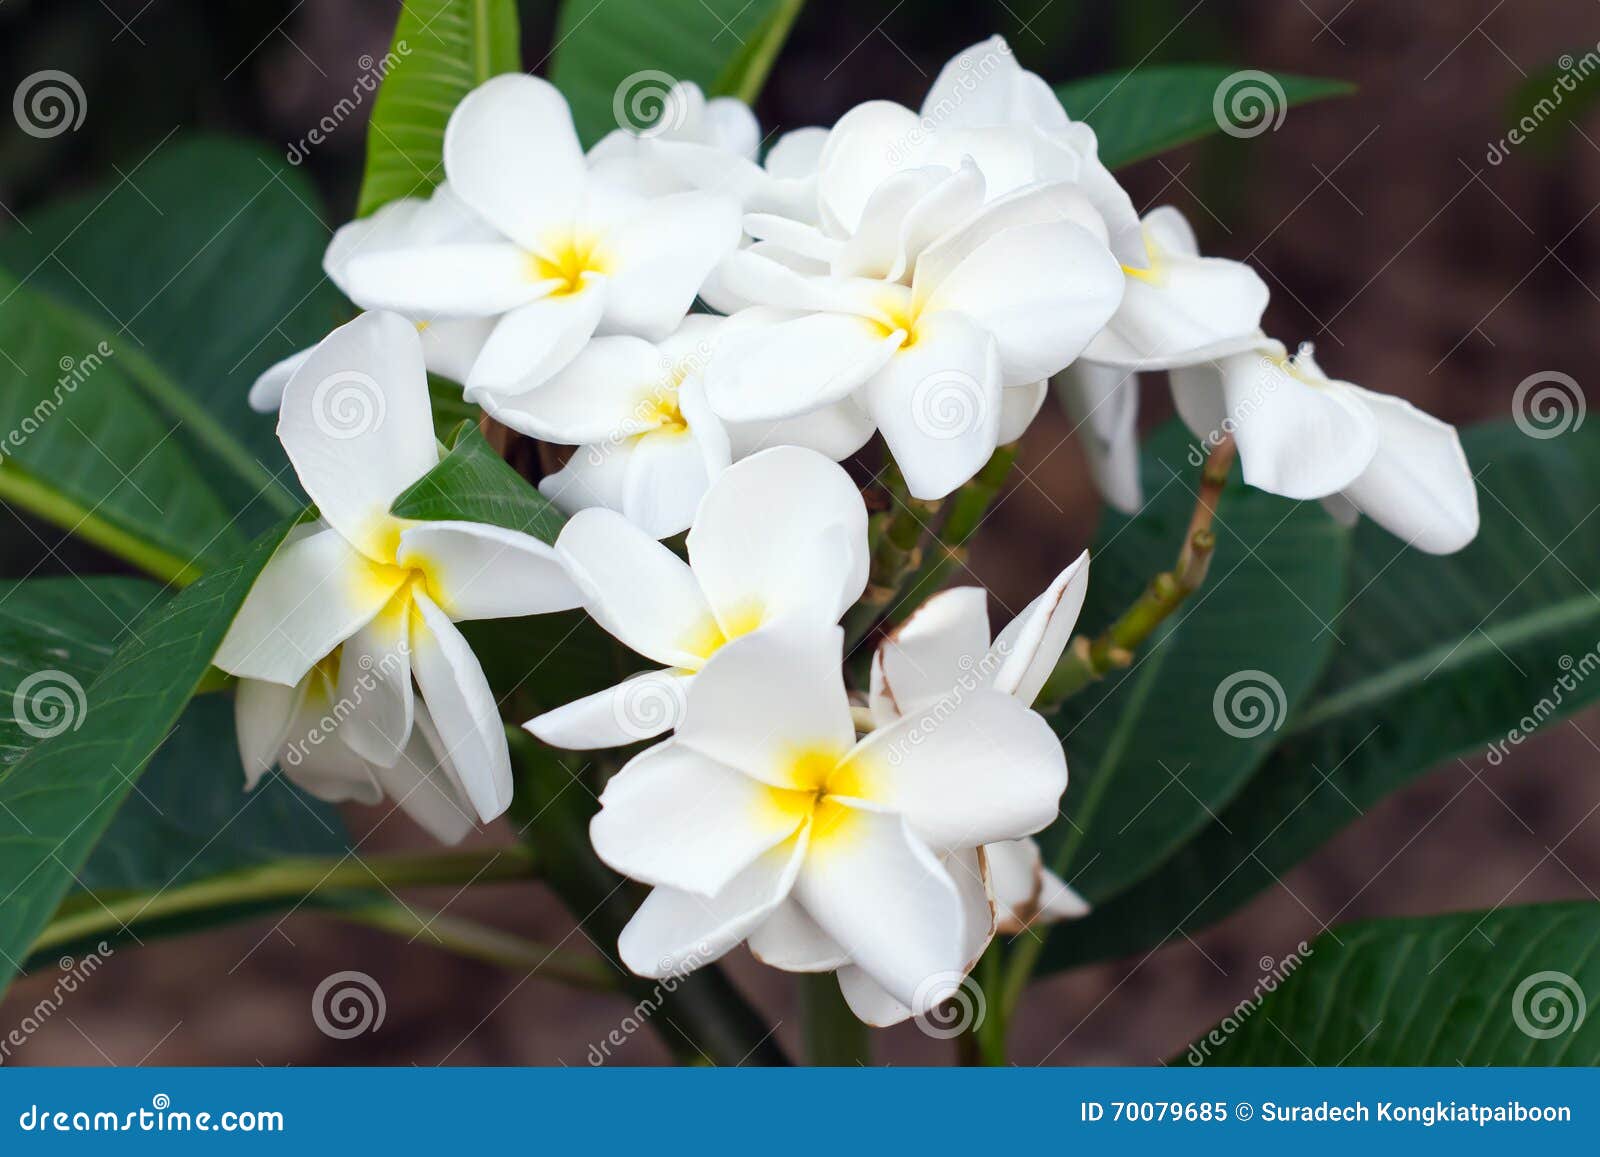 White Plumeria flower stock image. Image of board, flower - 70079685